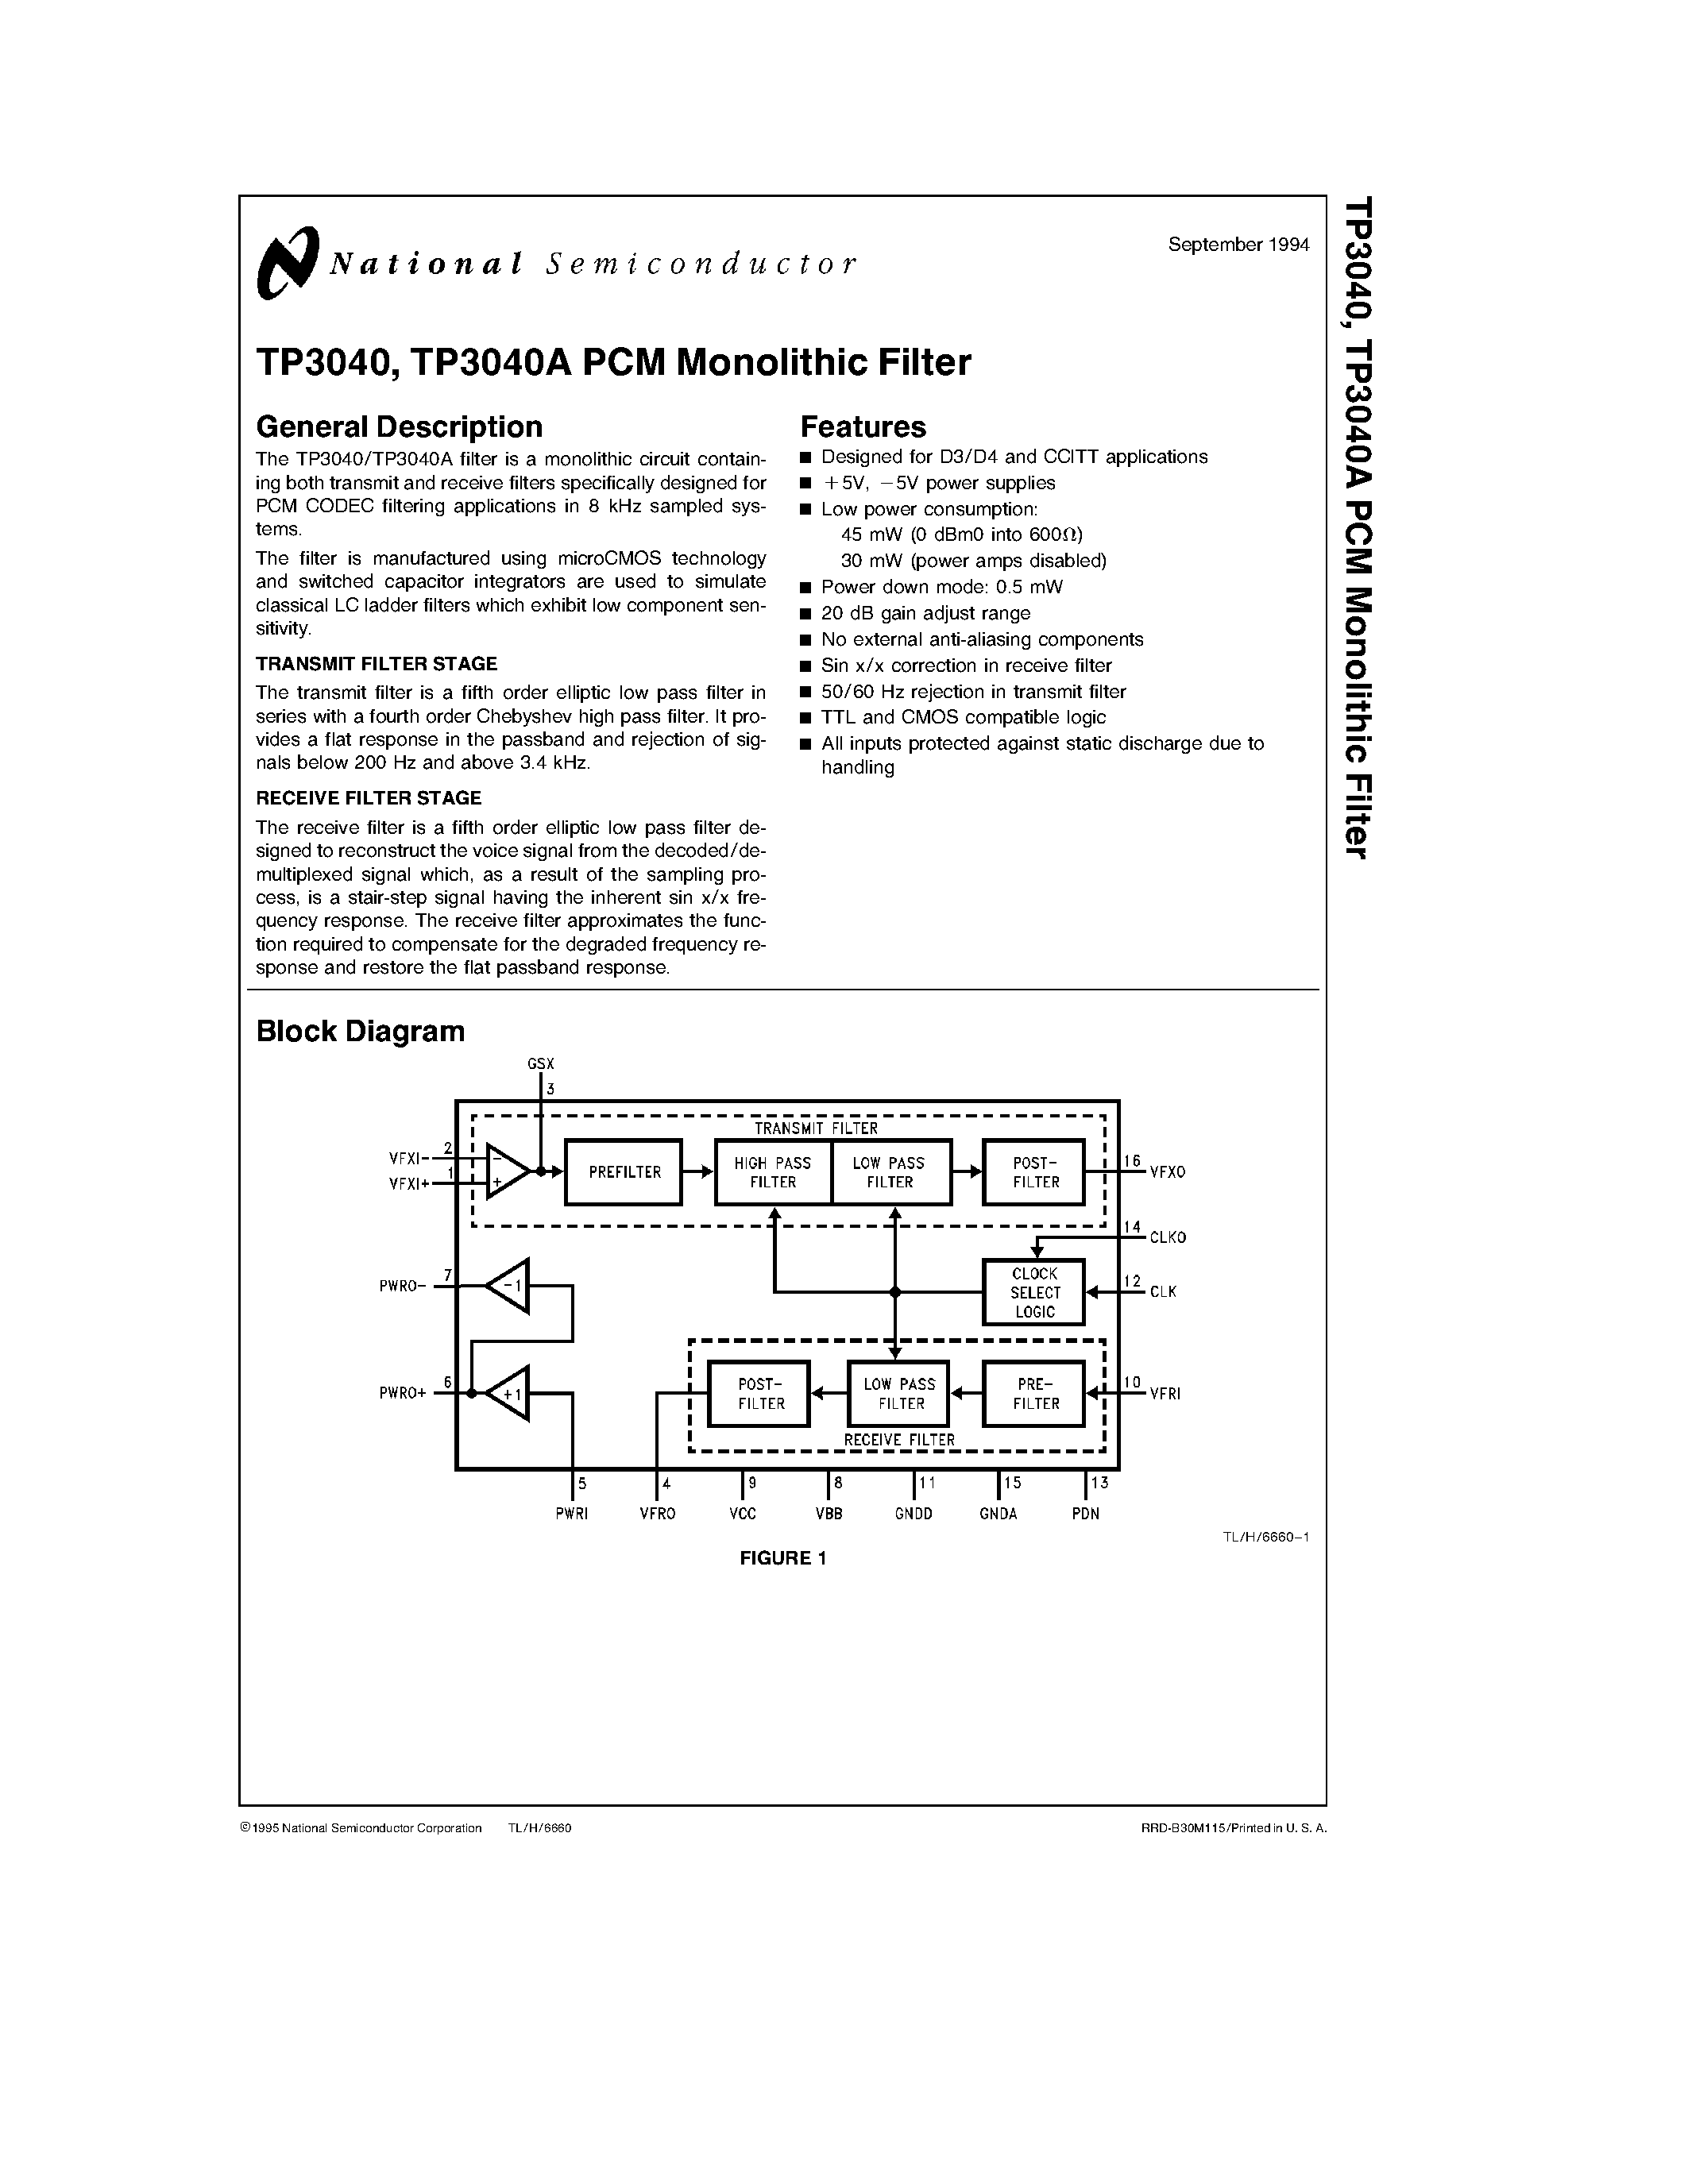 Datasheet TP3040AV - TP3040/ TP3040A PCM Monolithic Filter page 1